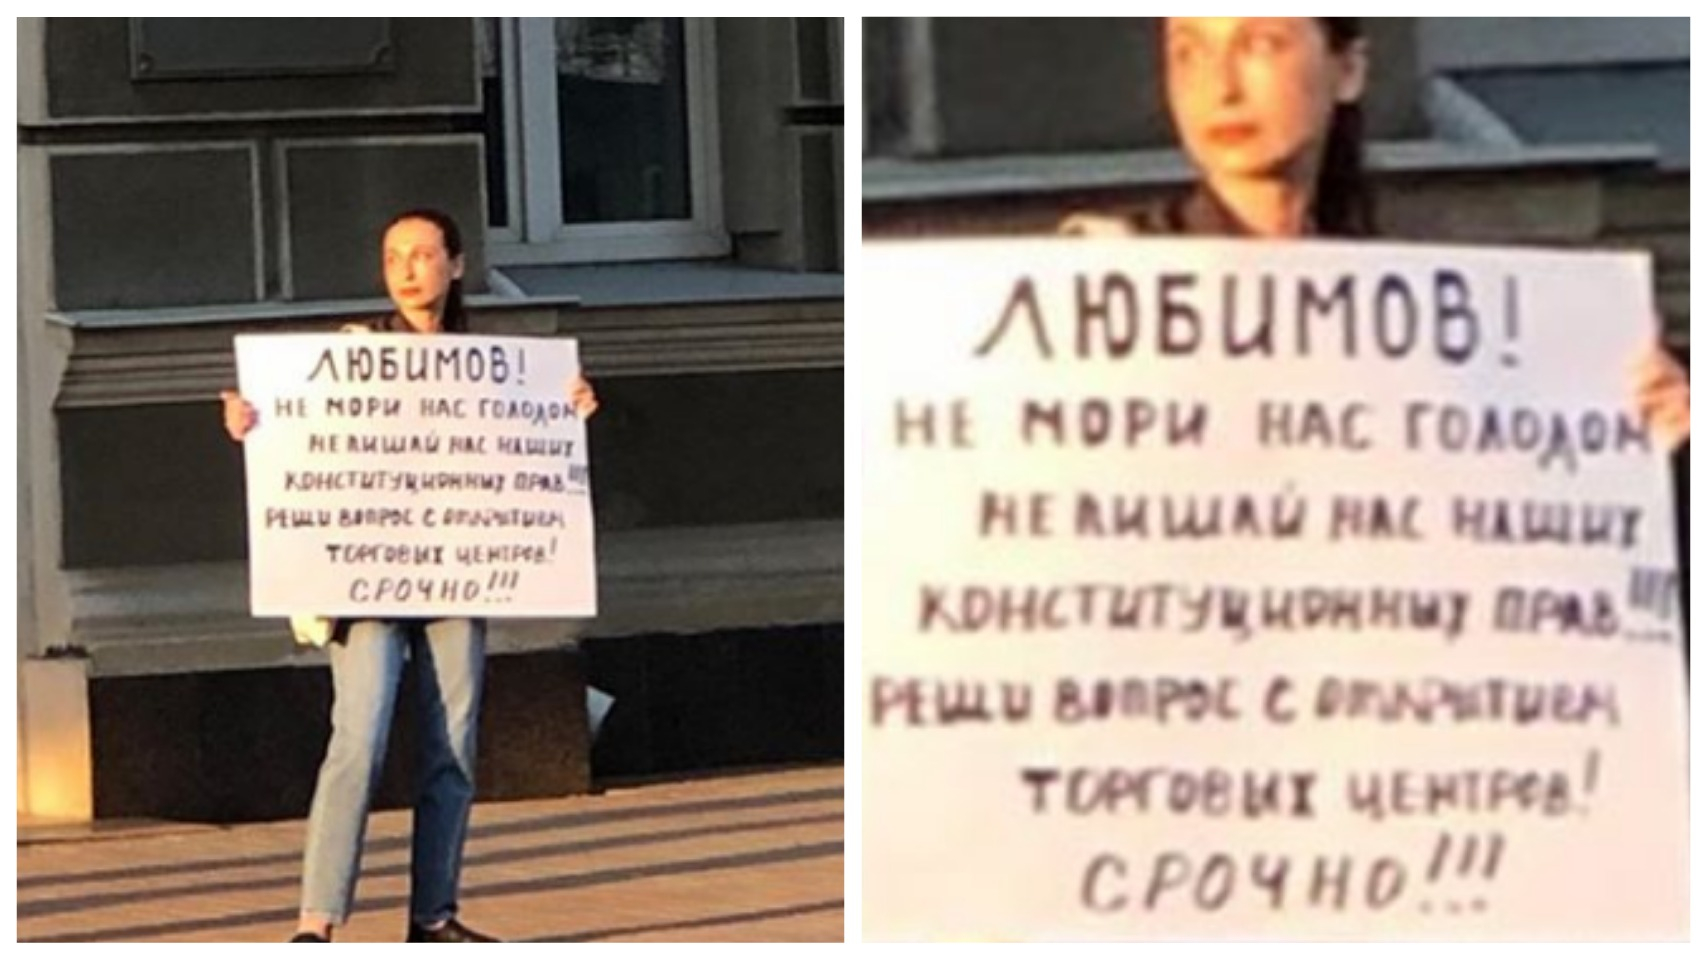 "Любимов, не мори нас голодом": рязанка требует у губернатора открыть ТЦ